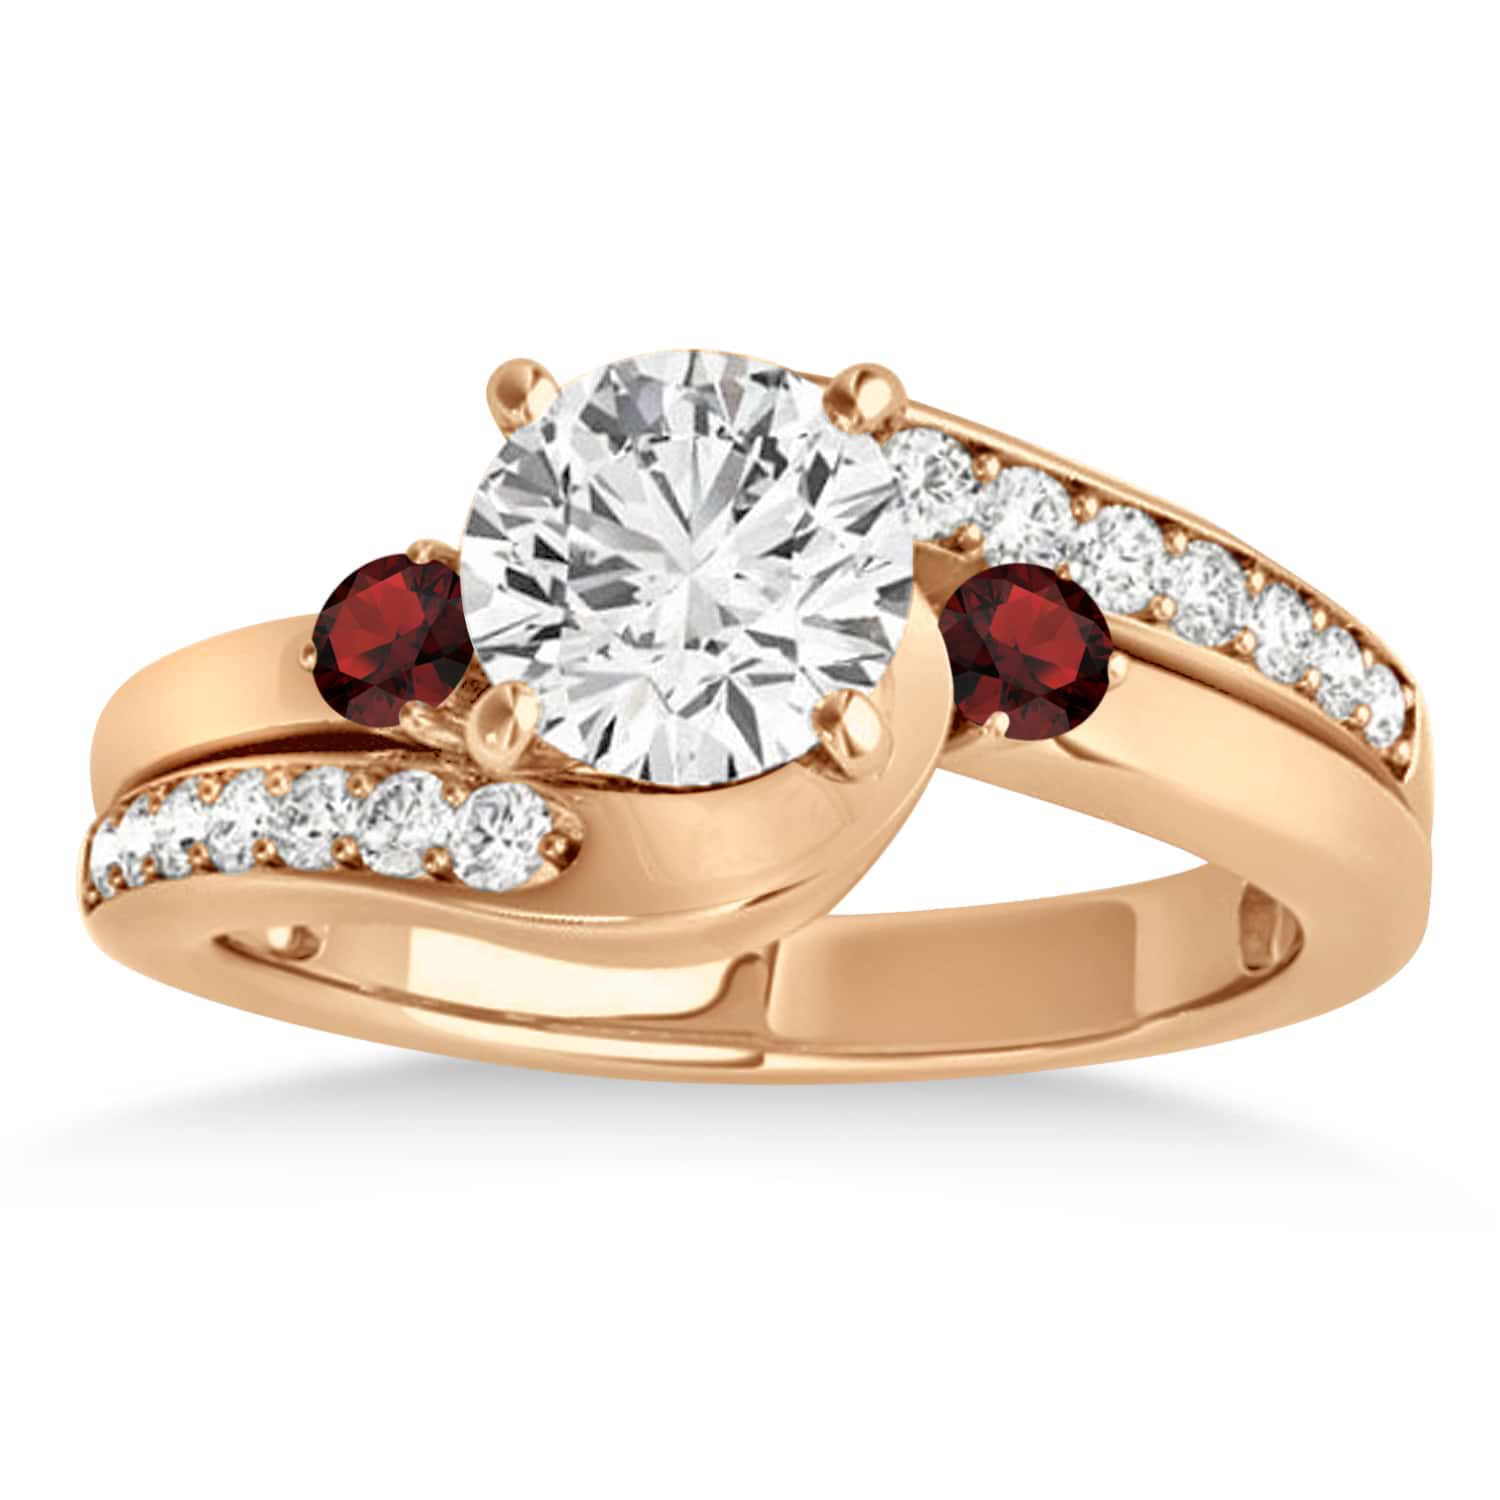 Swirl Design Garnet & Diamond Engagement Ring Setting 14k Rose Gold 0.38ct